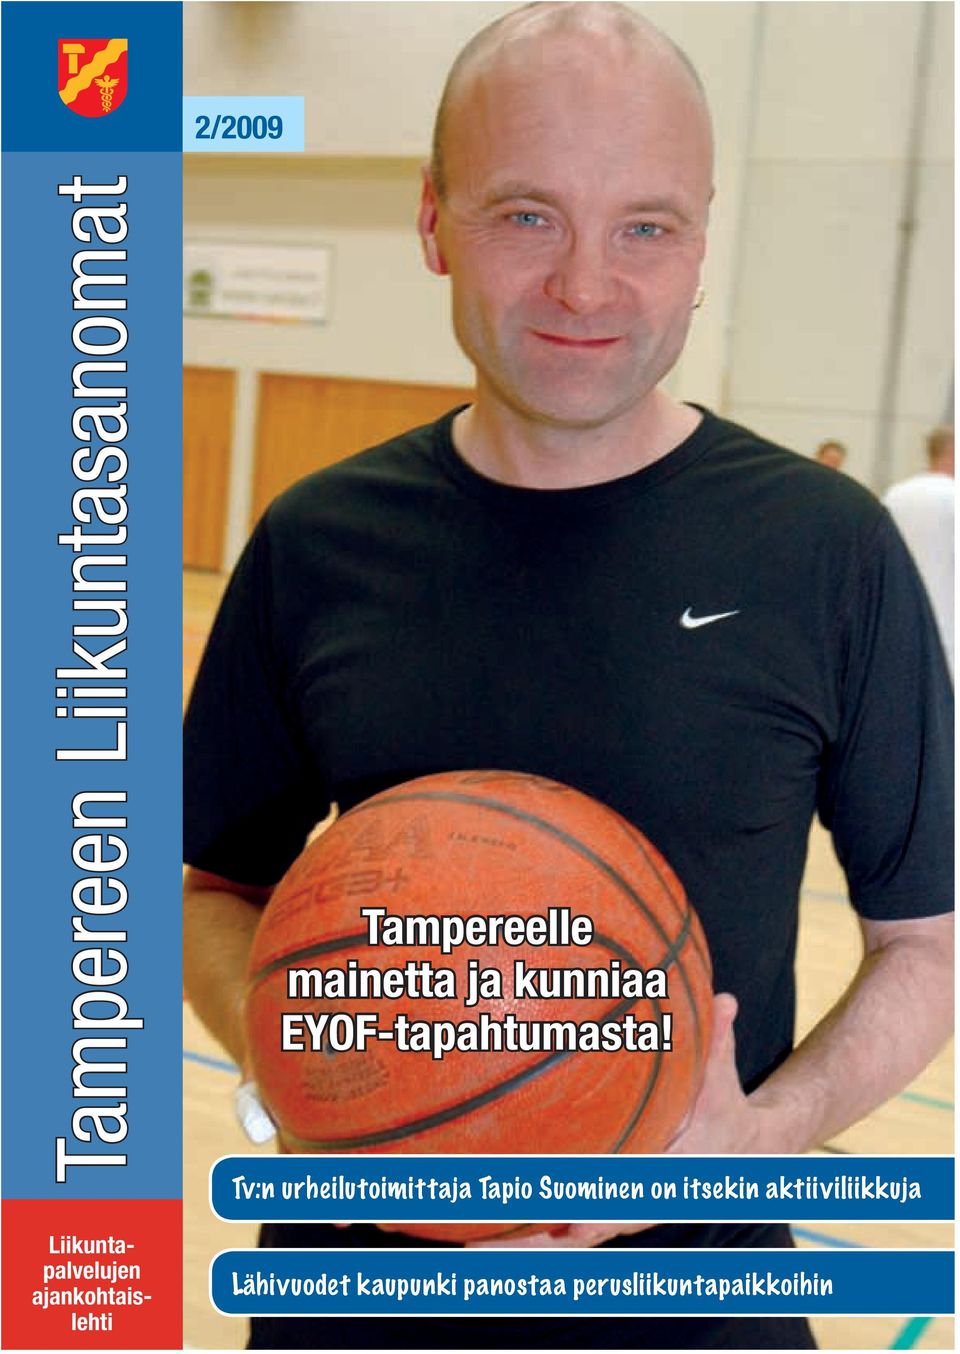 Tv:n urheilutoimittaja Tapio Suominen on itsekin